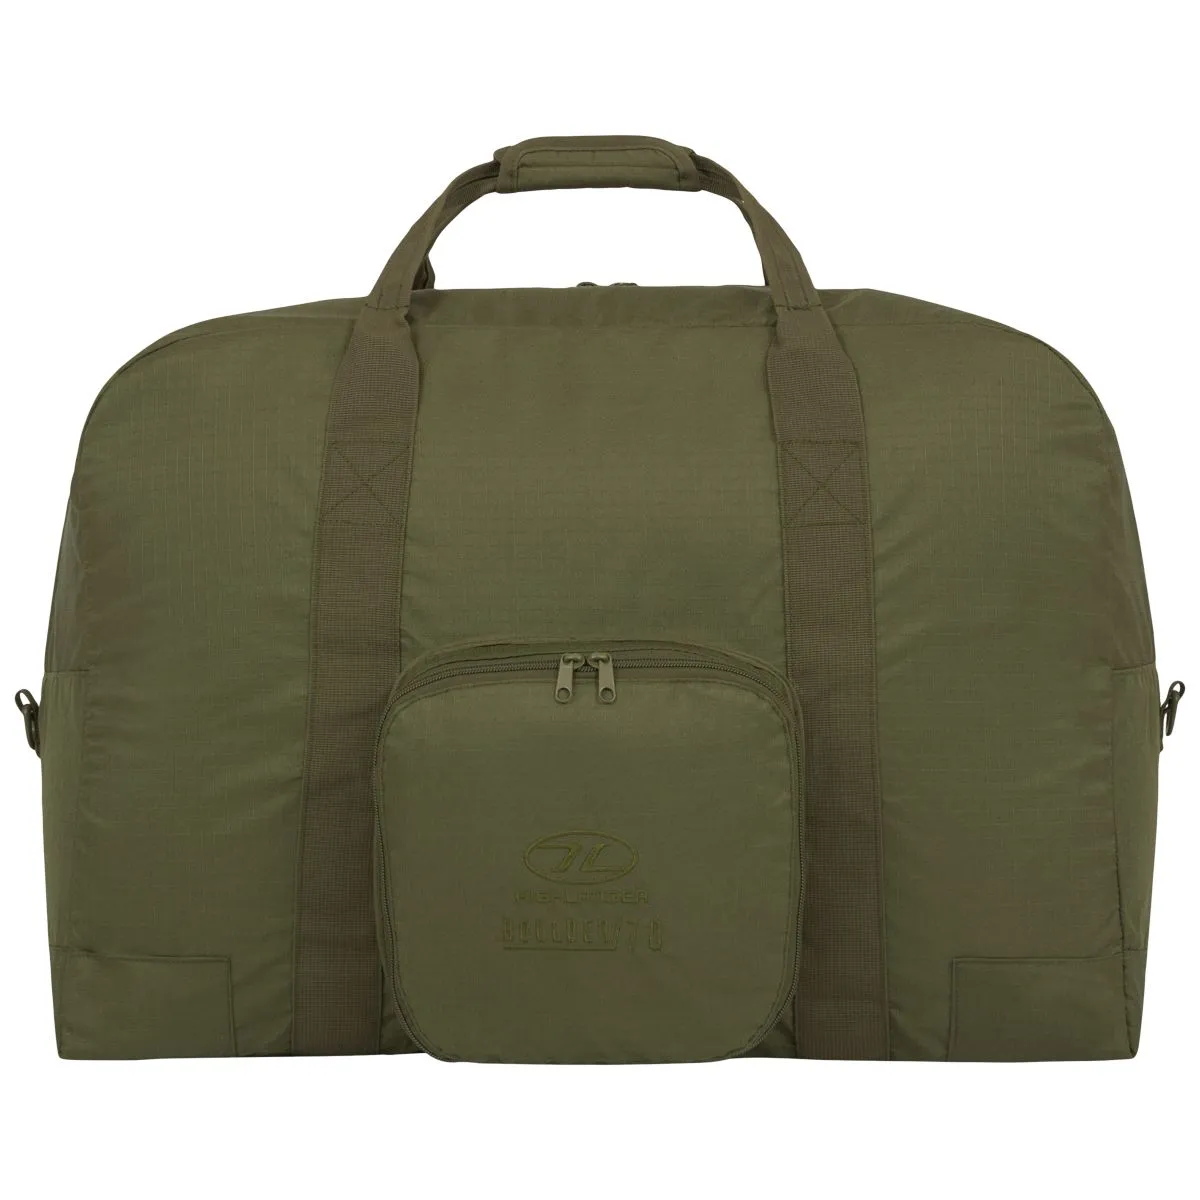 Boulder Duffle Bag 70l- 3 colour choices